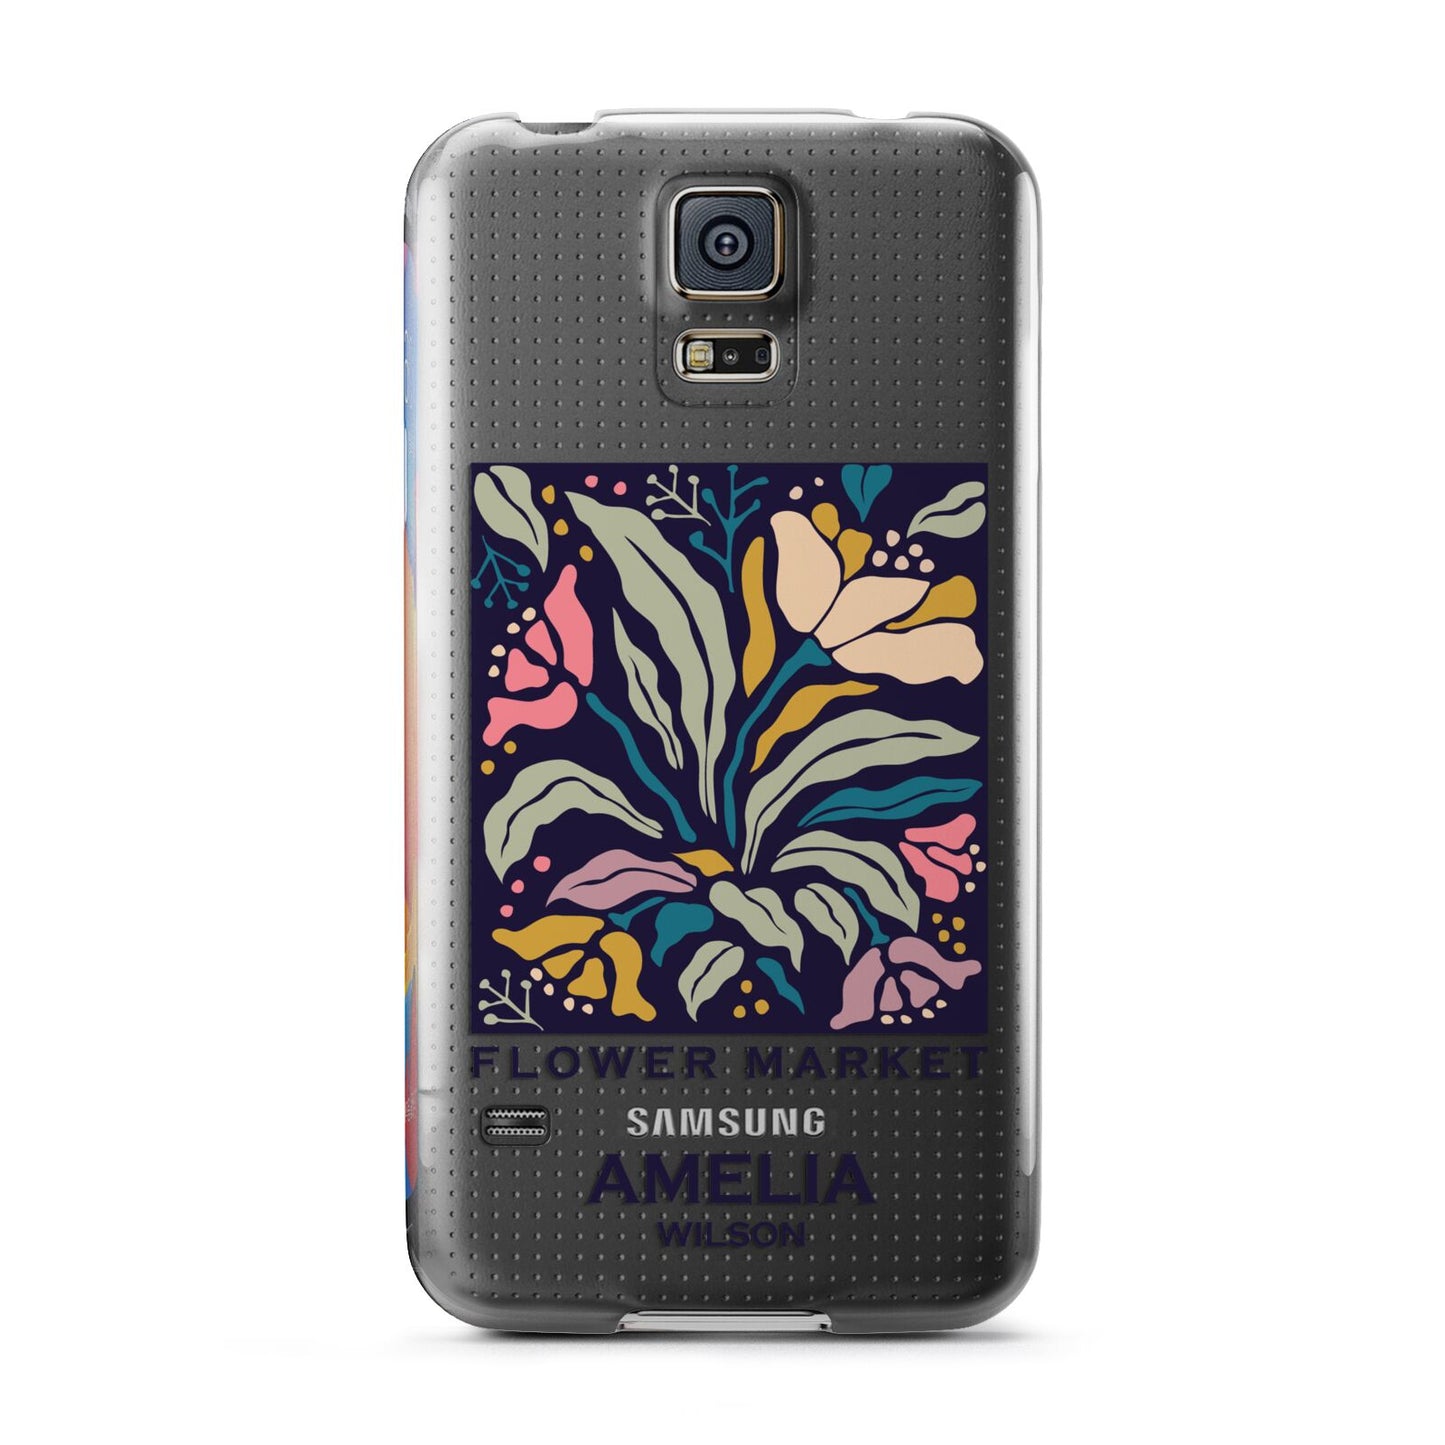 Seoul Flower Market Samsung Galaxy S5 Case